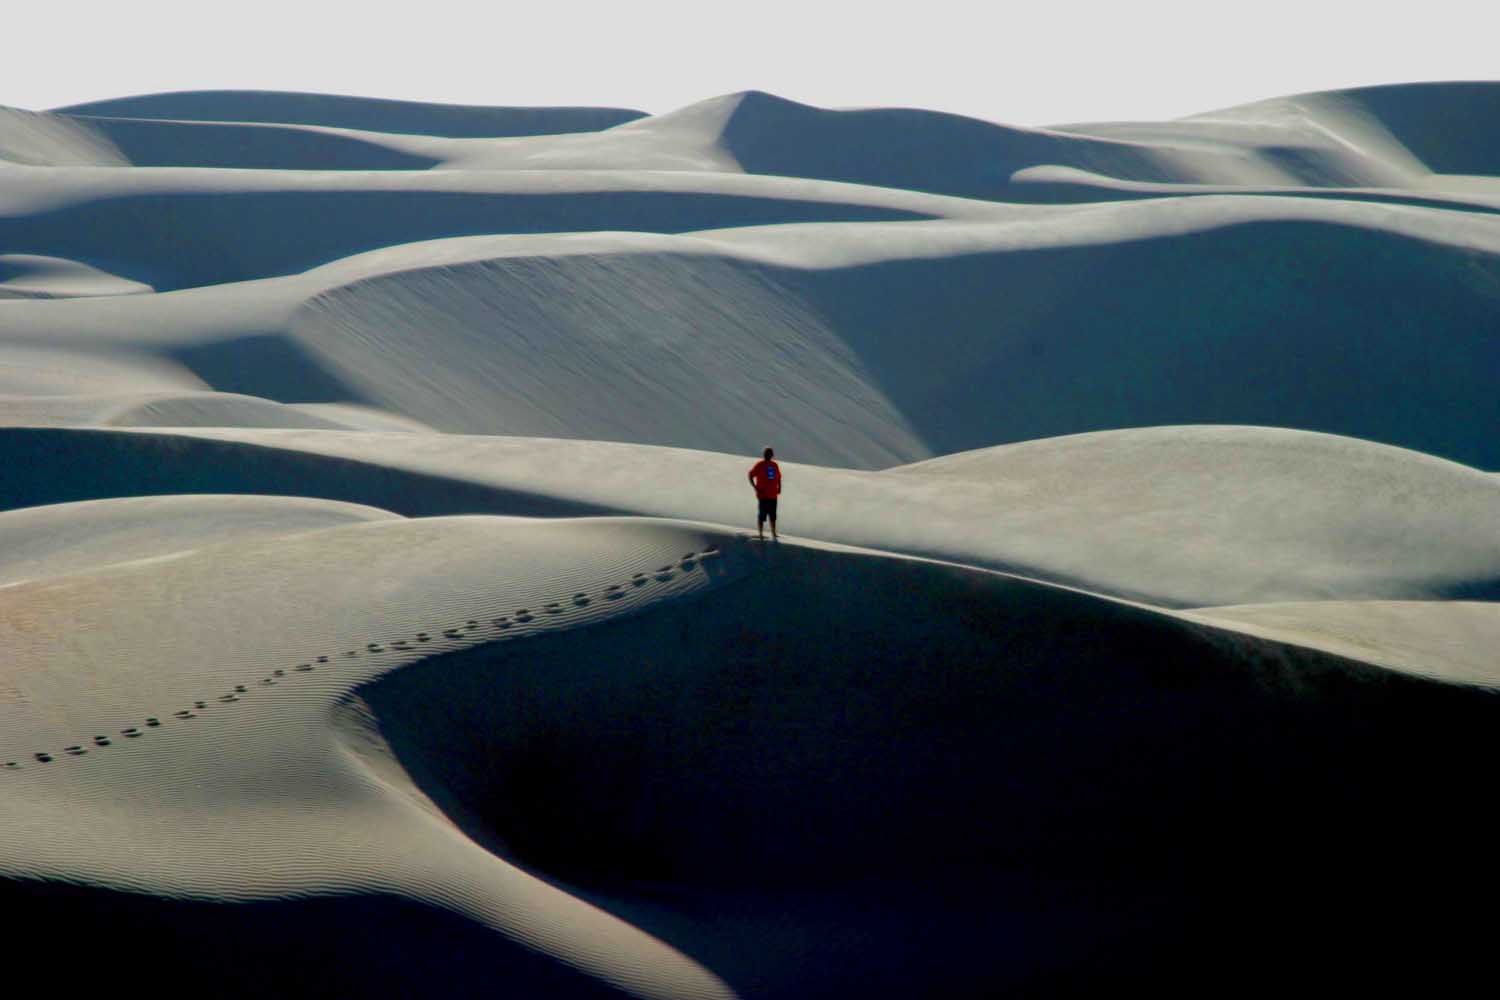 Cenário cinematográfico, dunas do Rosado lembram o deserto (Foto: Edvaldo Parreira)